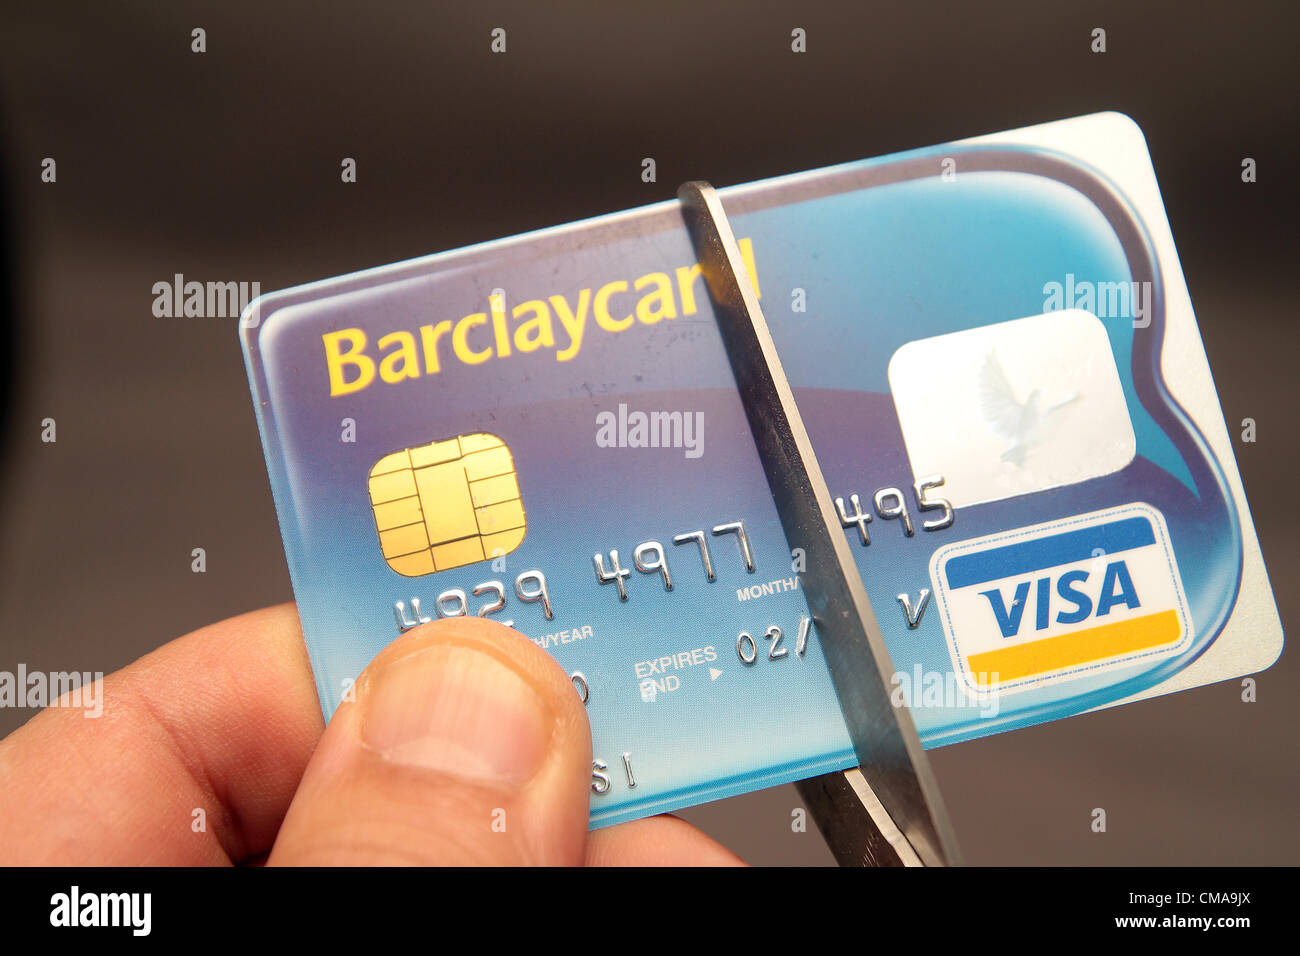 Mock-up einer Barclaycard Kreditkarte wird halbiert aus Protest gegen Barclays  Bank Libor-Skandal im Vereinigten Königreich Stockfotografie - Alamy